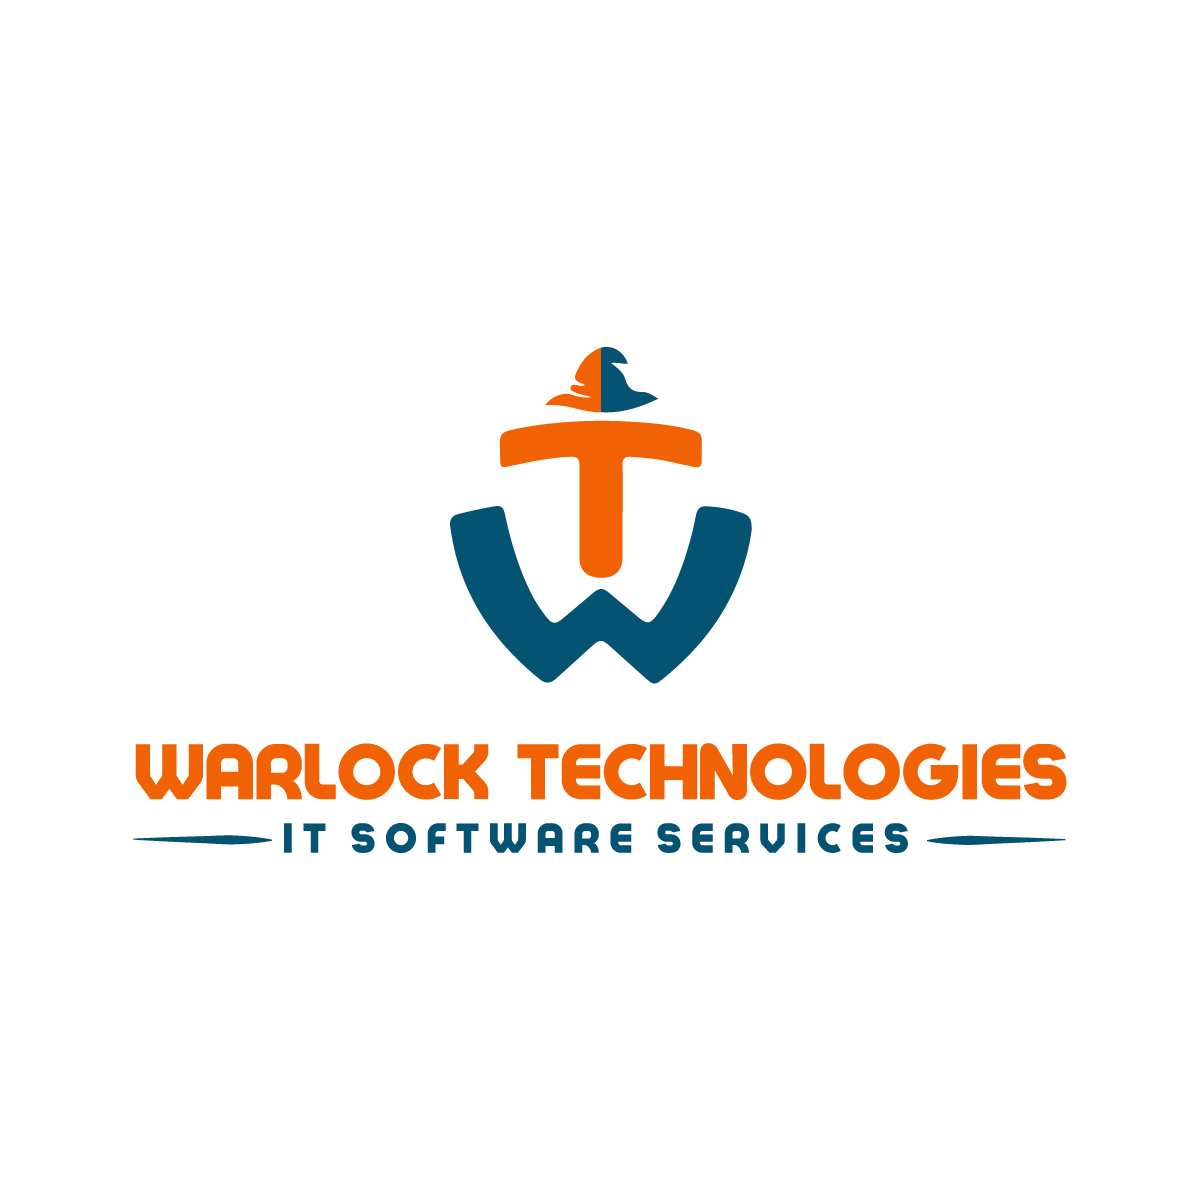 Warlock Technologies Pvt Ltd